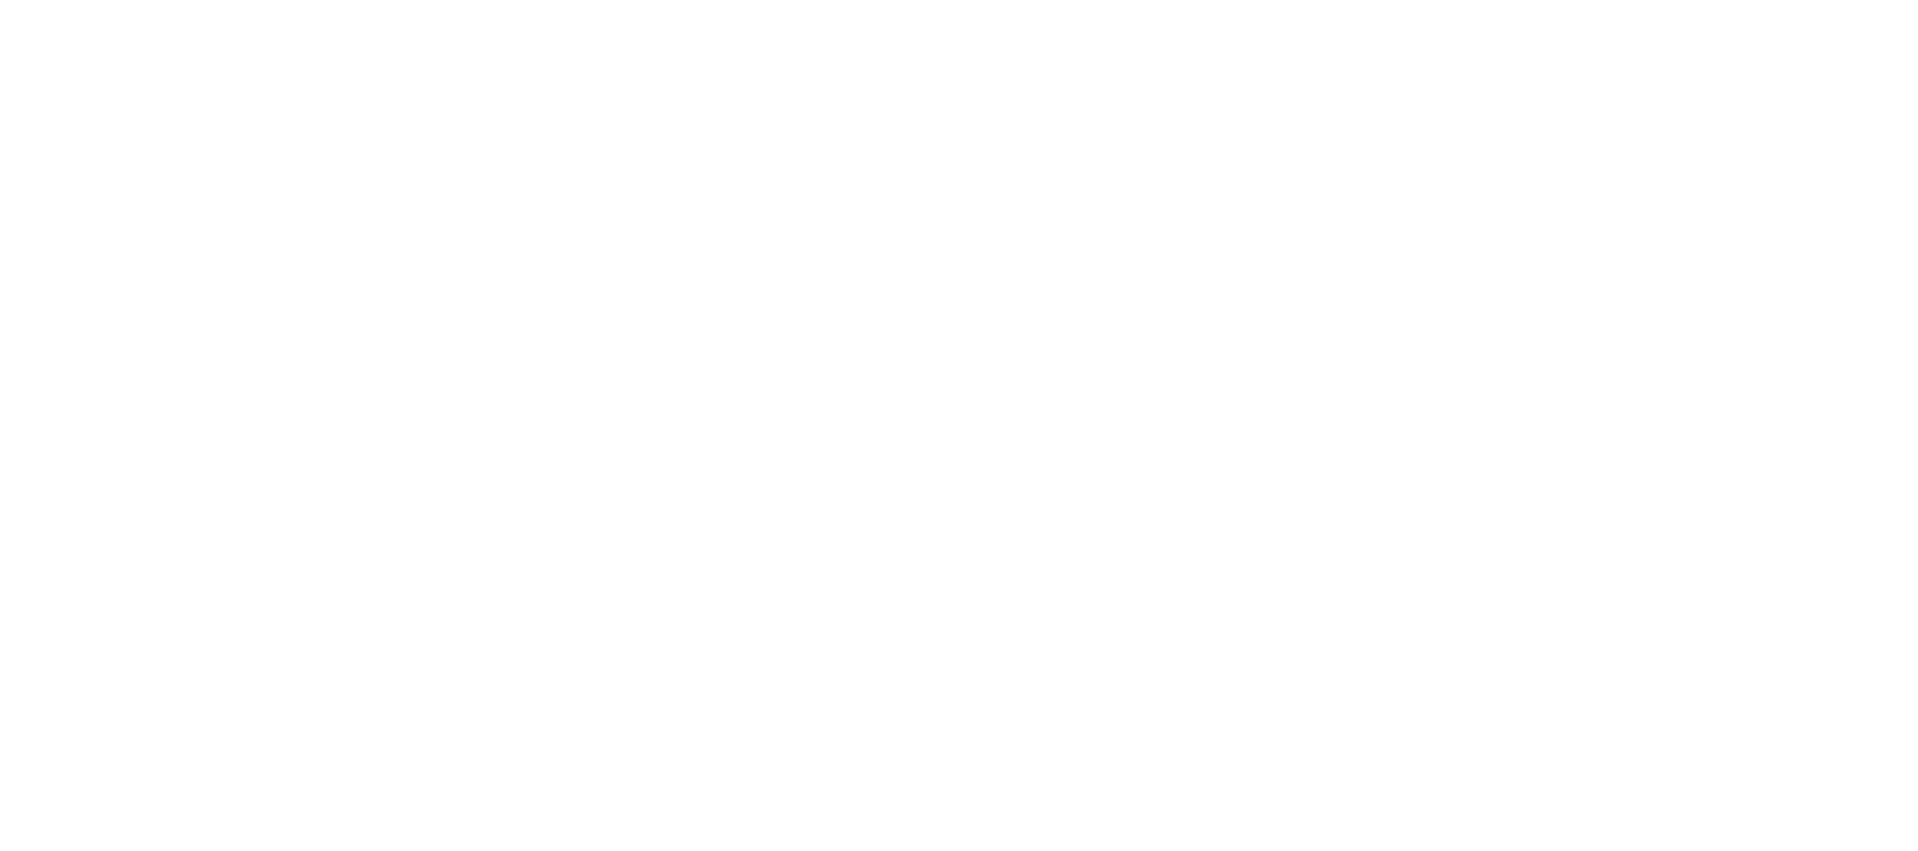 Be a Hyggespreder